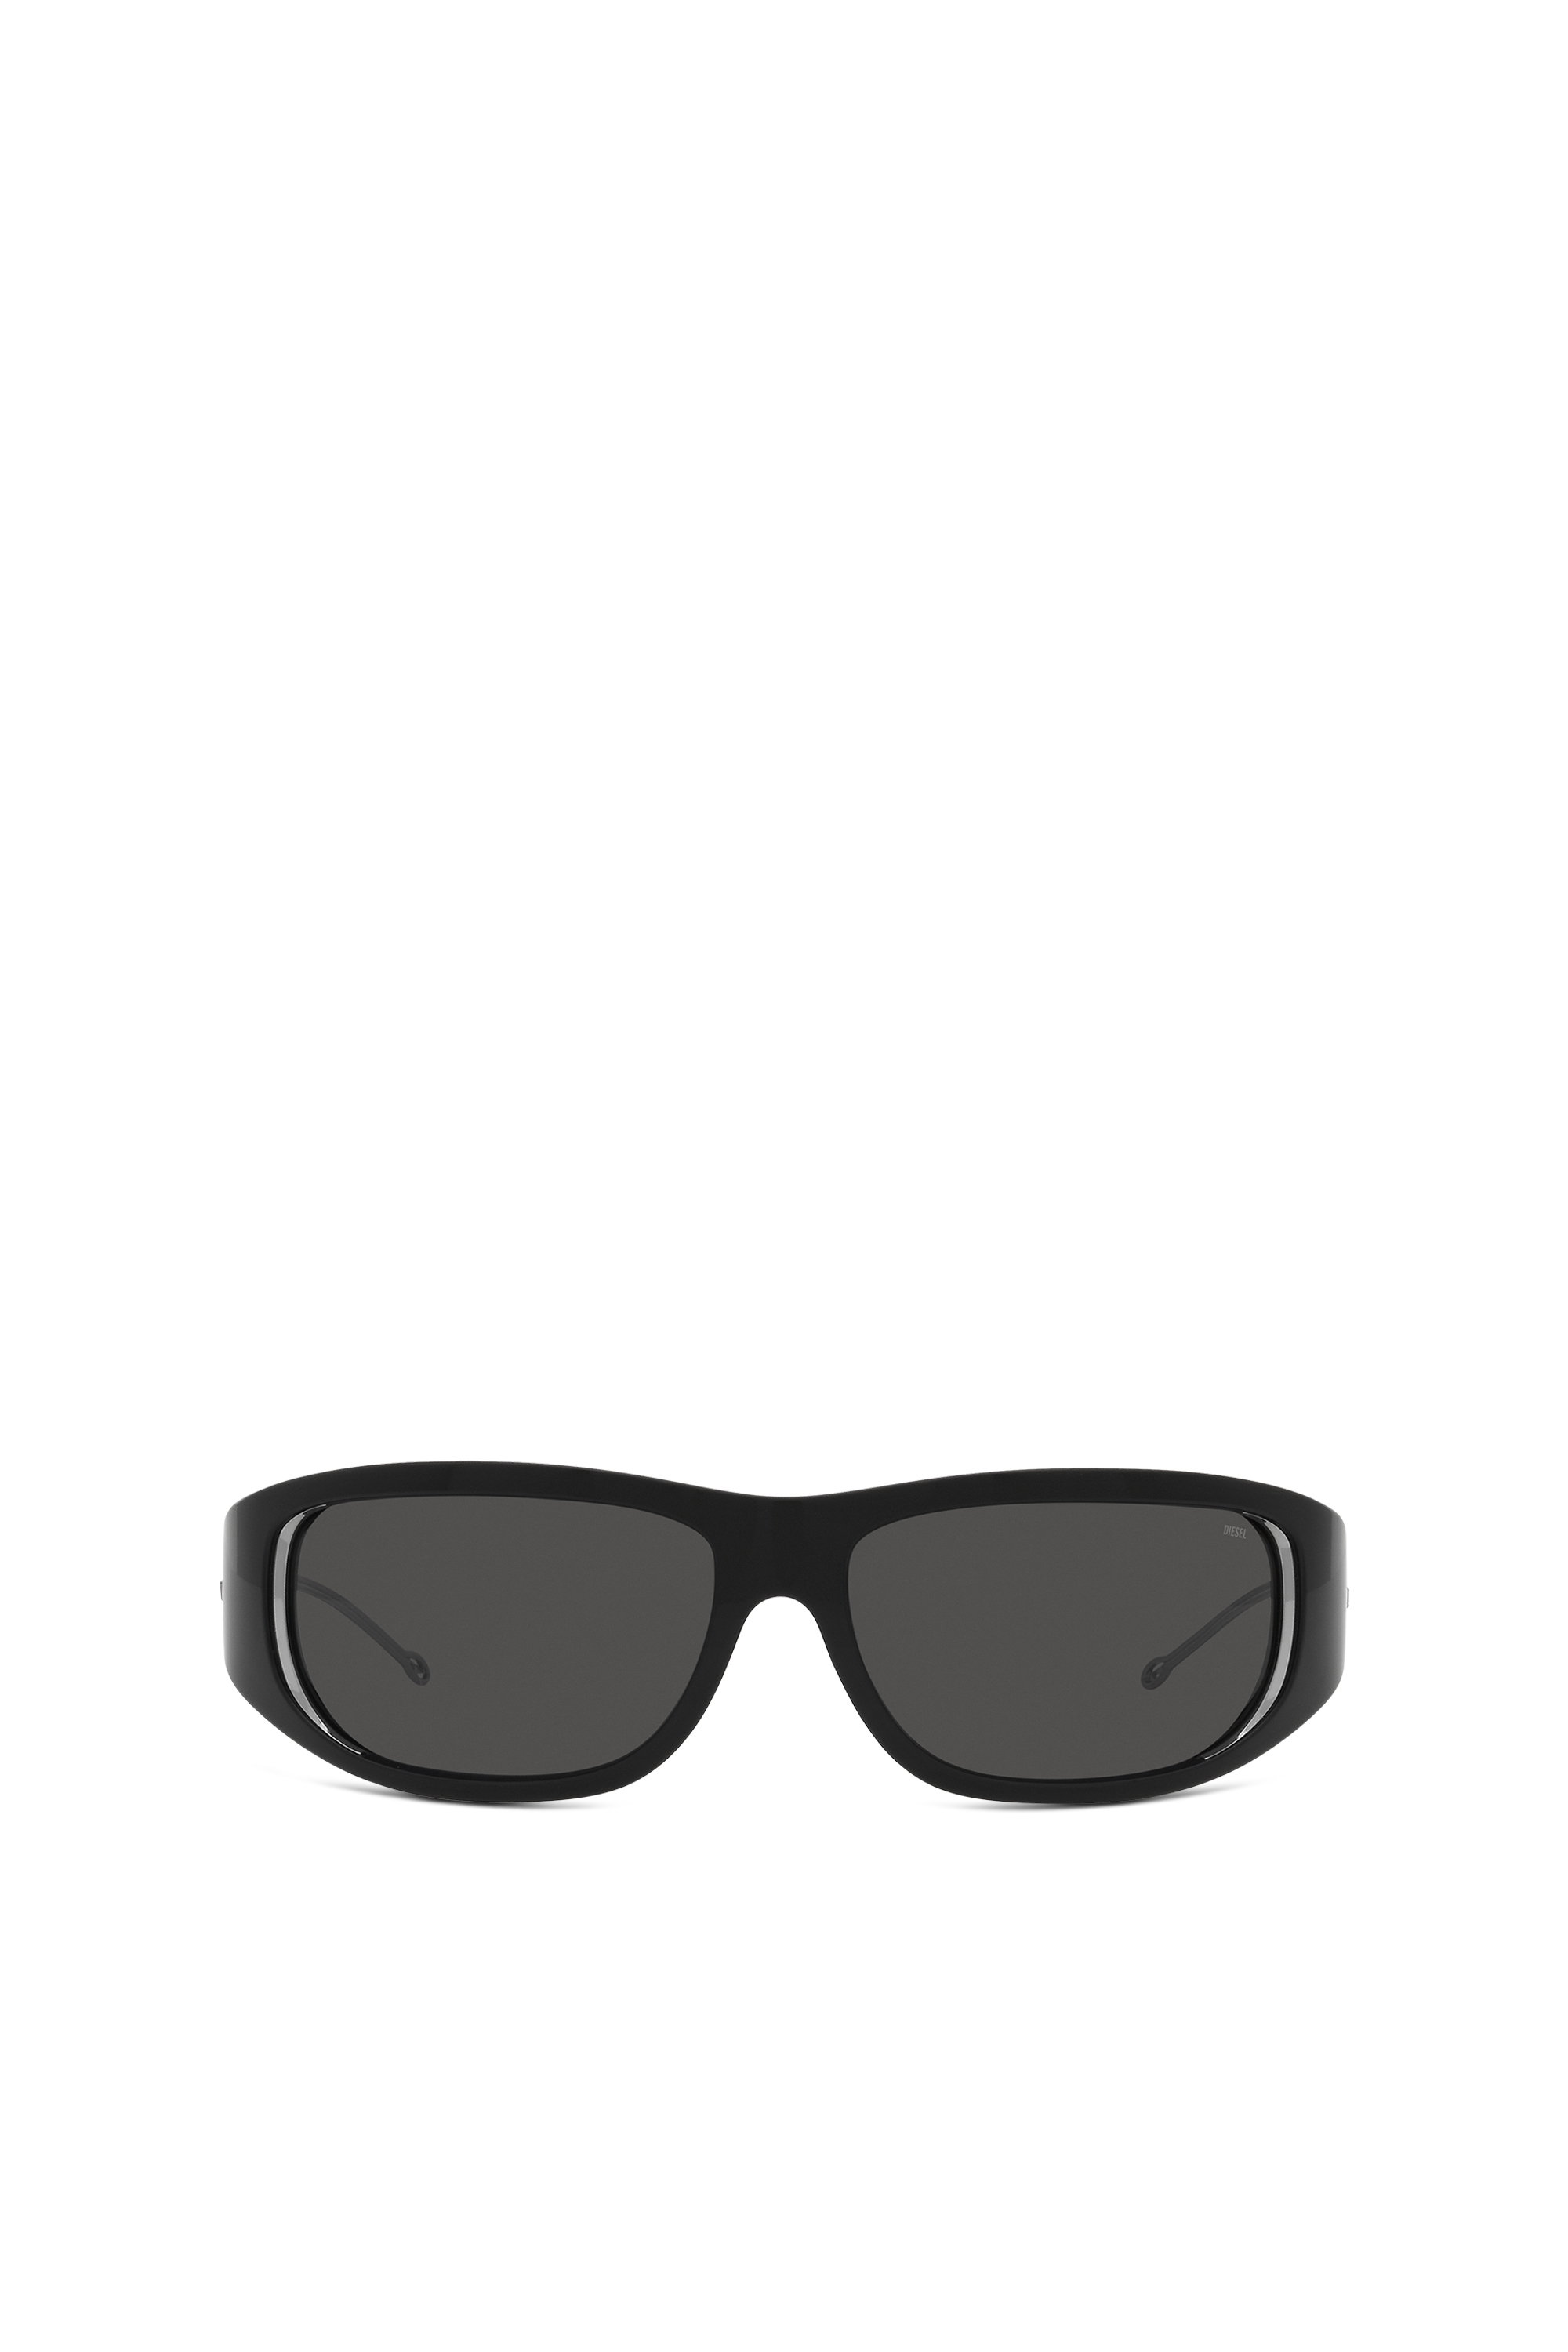 Diesel - Gafas con estilo envolvente - Gafas de sol - Unisex - Negro